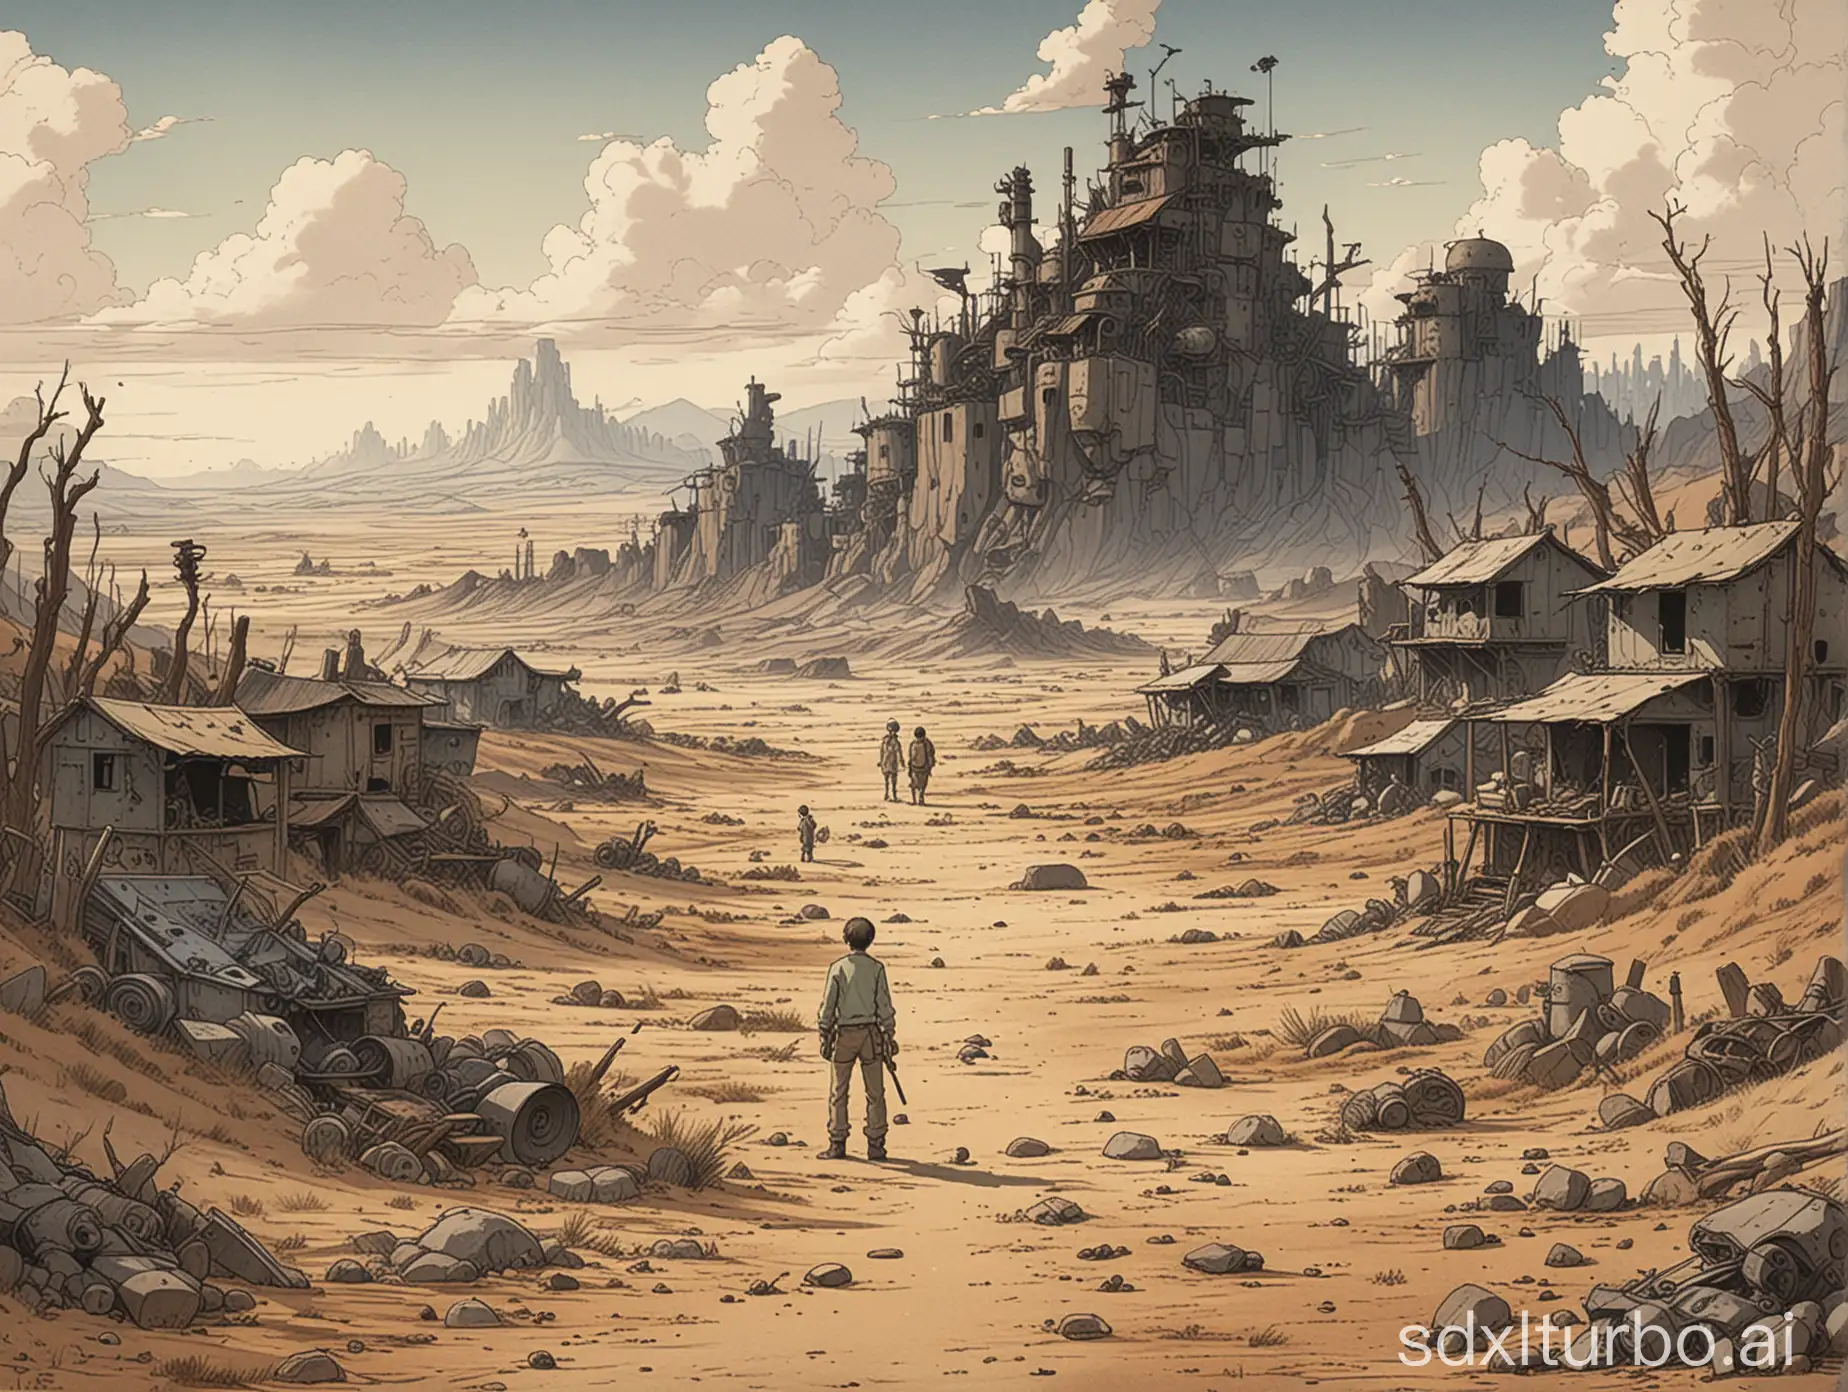 Ethereal-Wasteland-Illustration-by-Hayao-Miyazaki